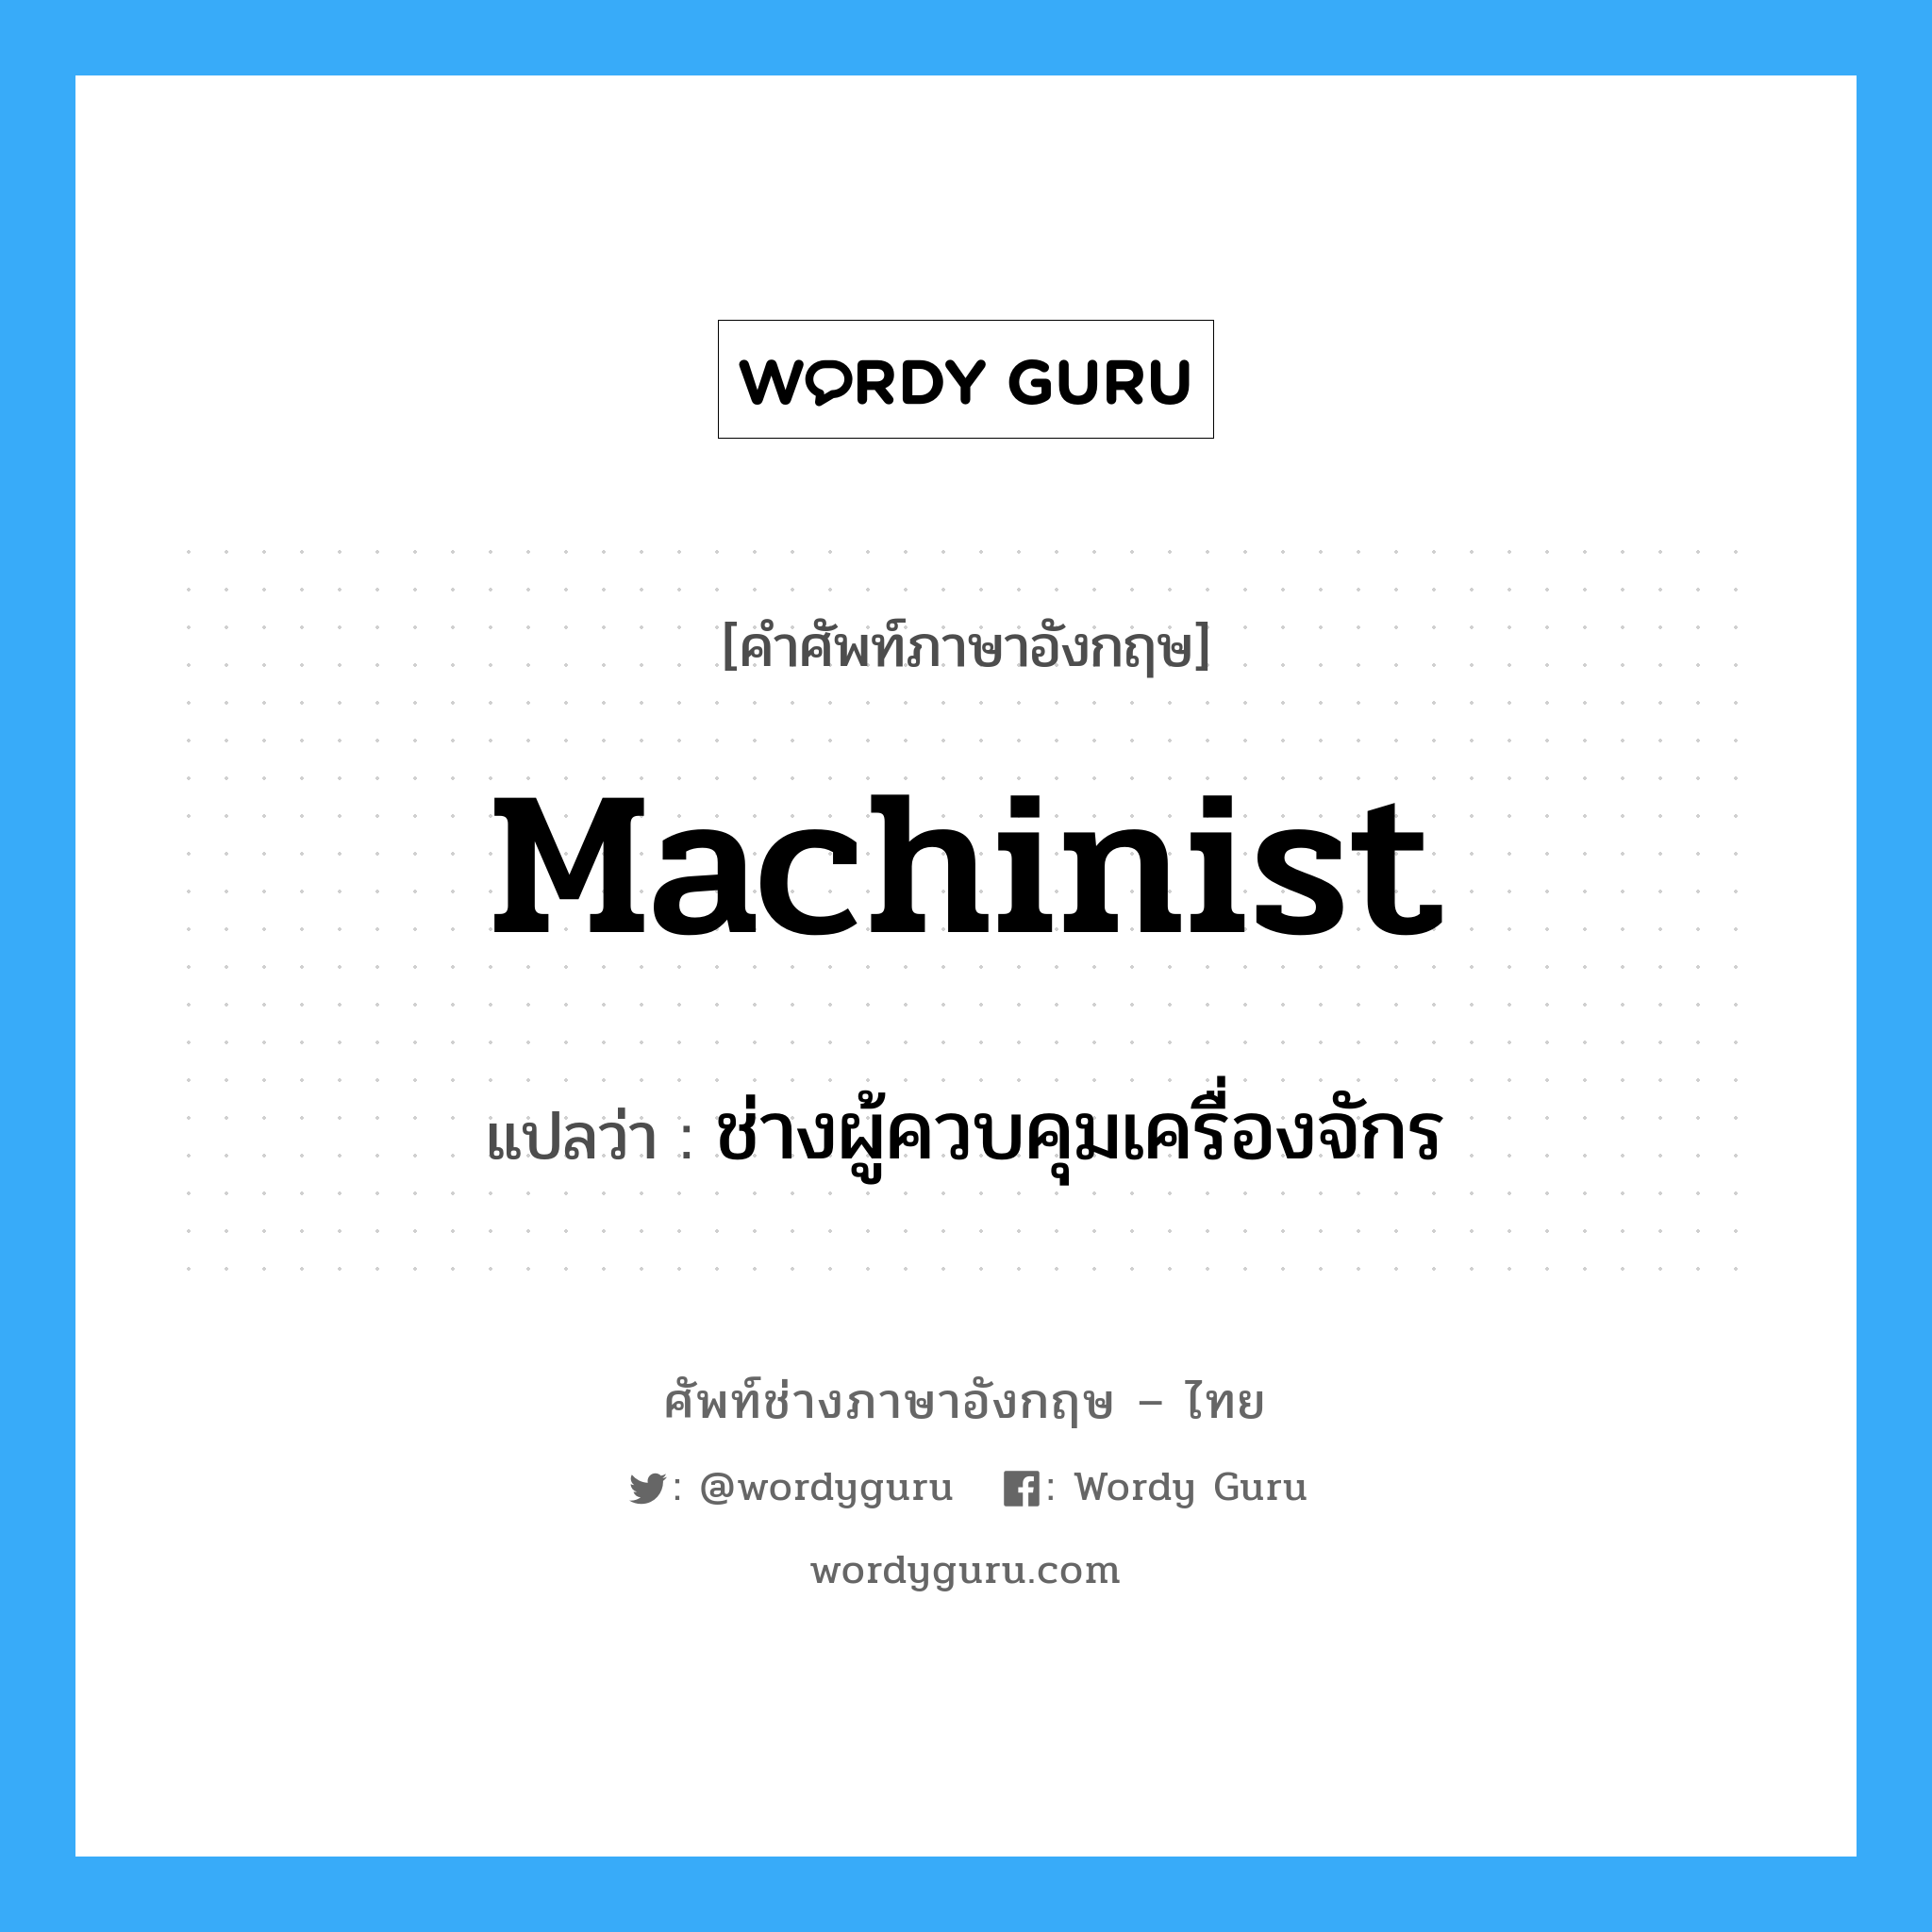 ช่างผู้ควบคุมเครื่องจักร ภาษาอังกฤษ?, คำศัพท์ช่างภาษาอังกฤษ - ไทย ช่างผู้ควบคุมเครื่องจักร คำศัพท์ภาษาอังกฤษ ช่างผู้ควบคุมเครื่องจักร แปลว่า machinist